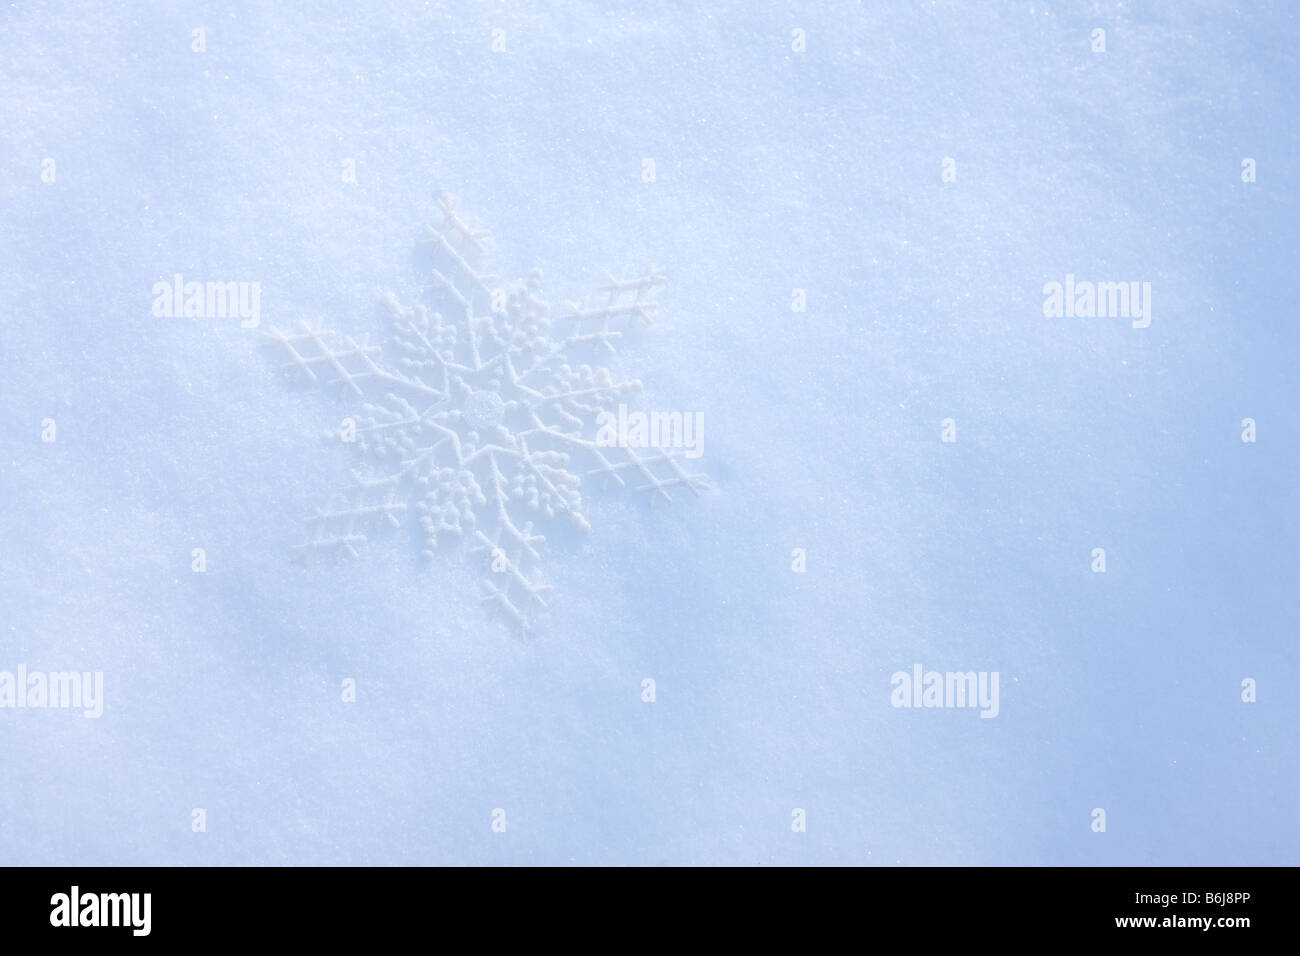 Adorno de copo de nieve fresca puesta en el invierno, la nieve blanca Foto de stock